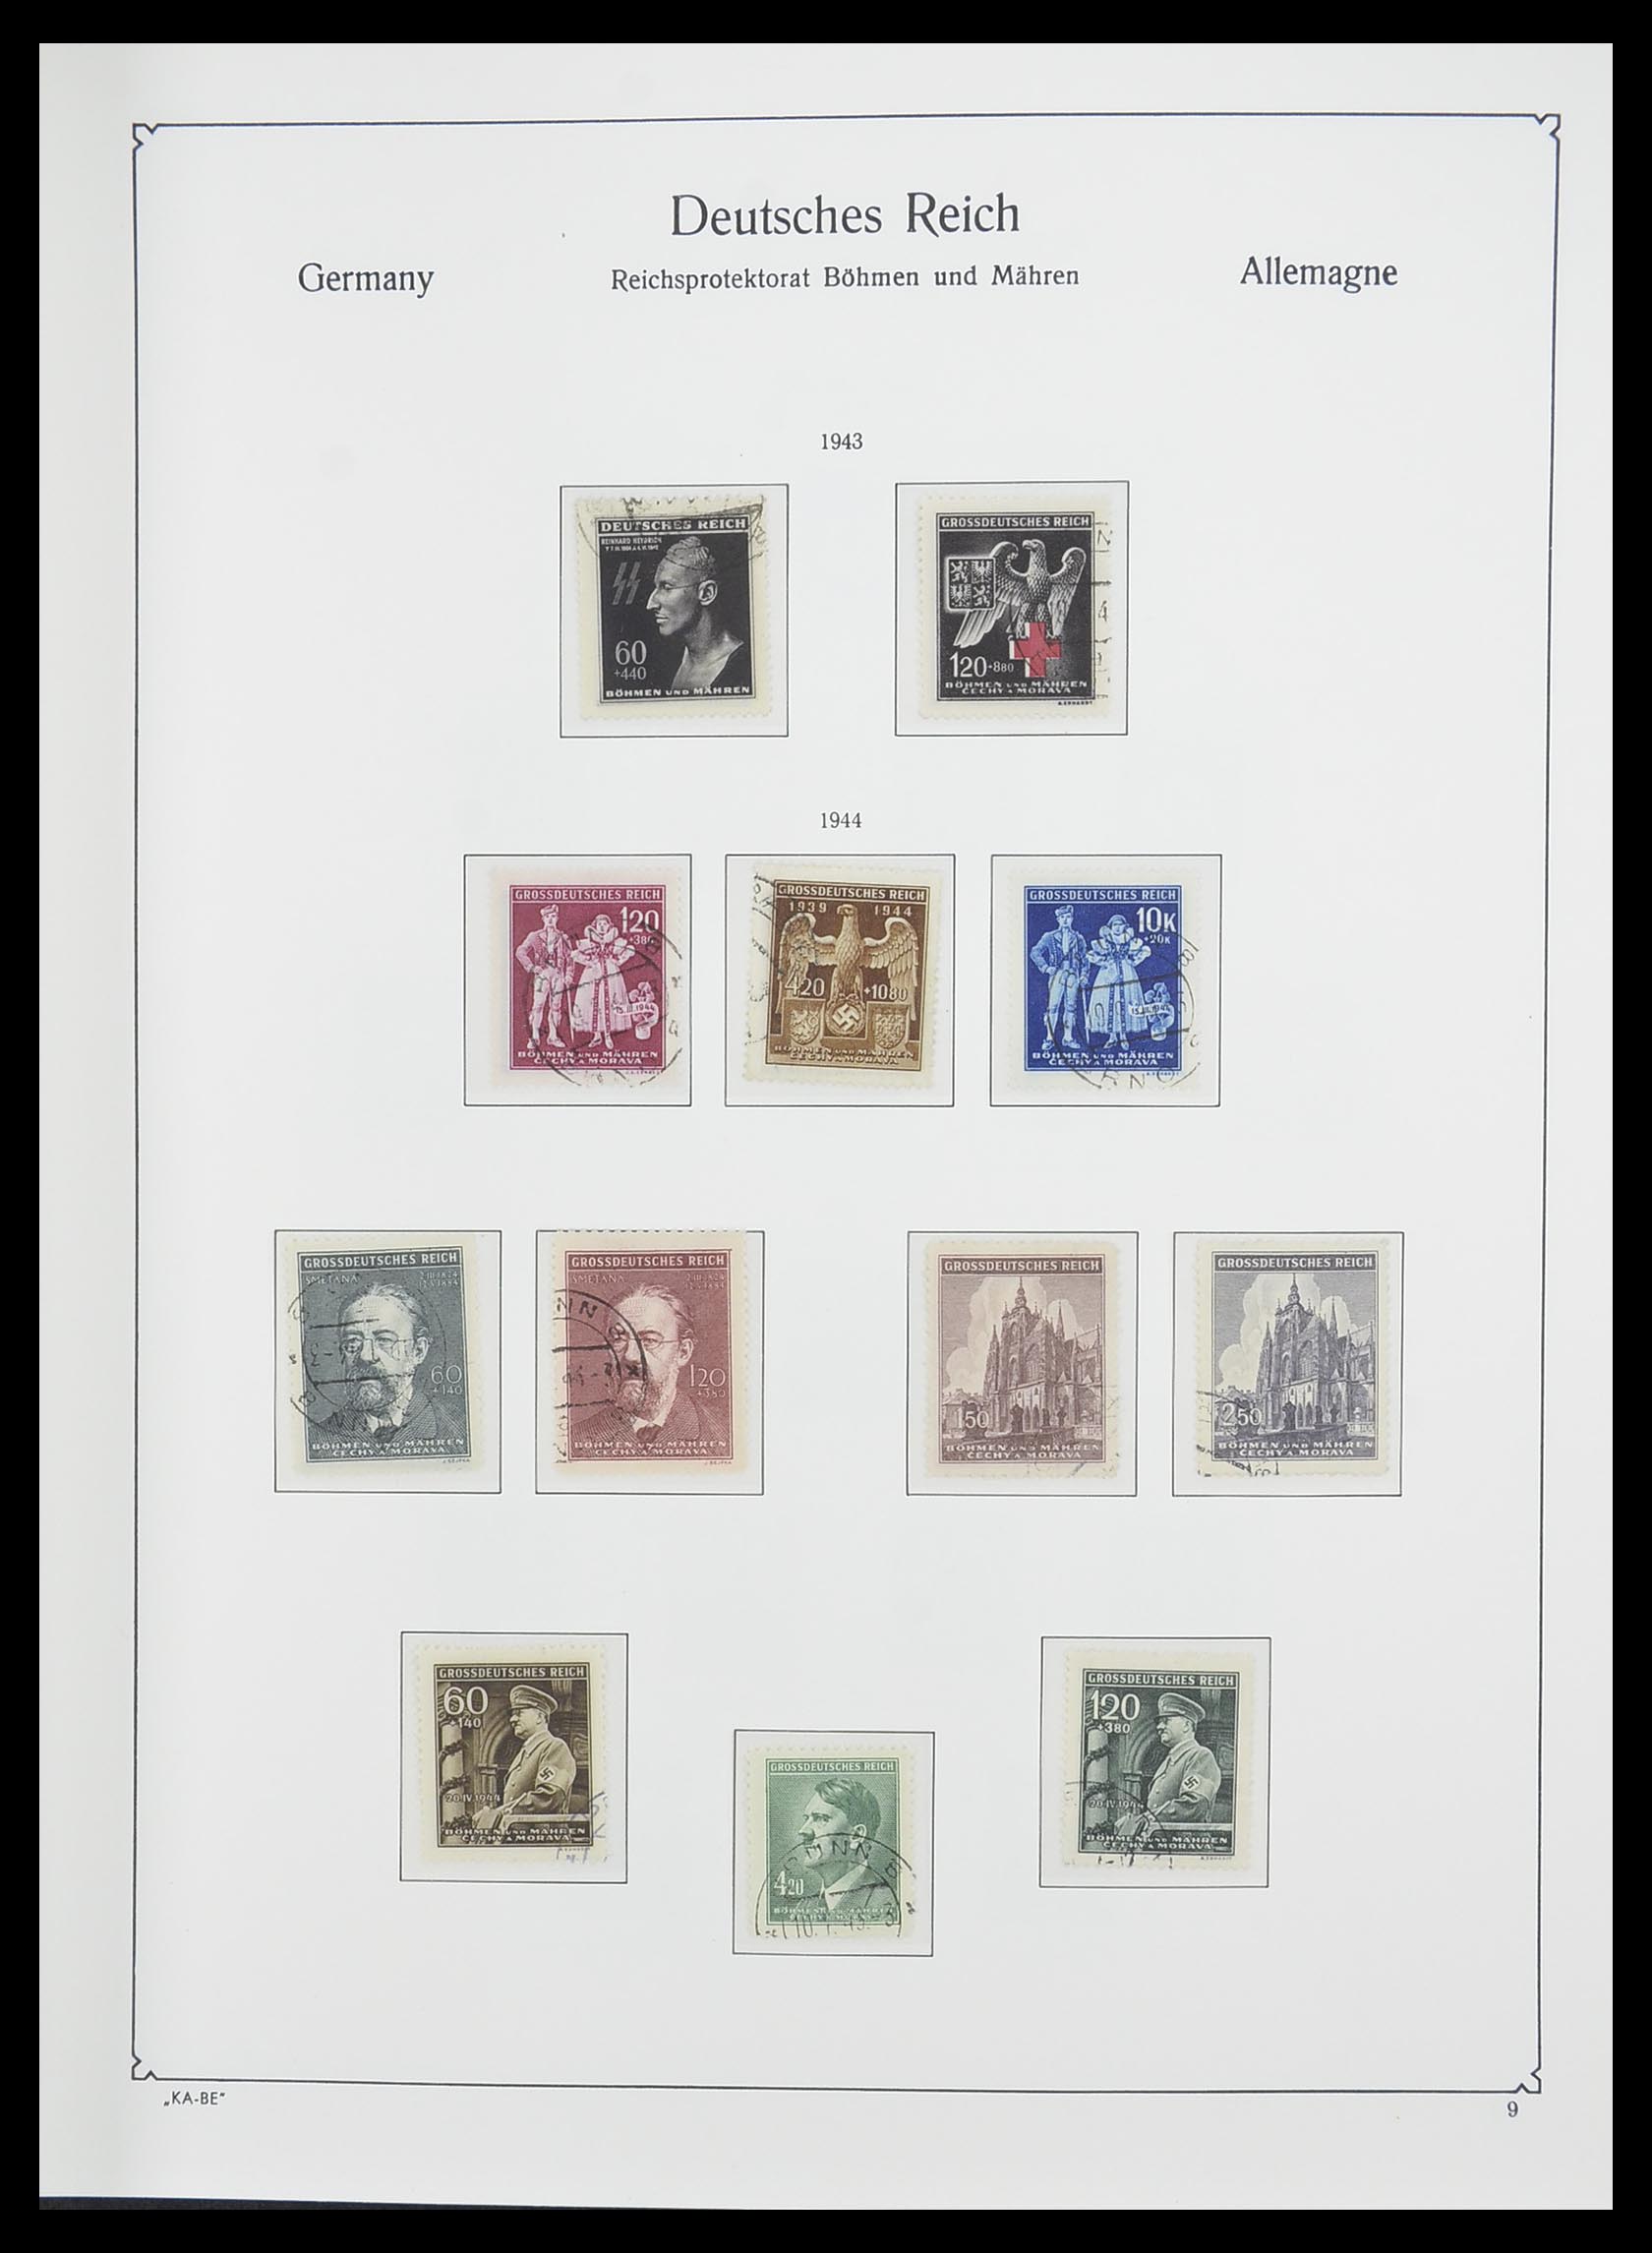 33360 016 - Stamp collection 33360 German occupation 2nd world war 1939-1945.